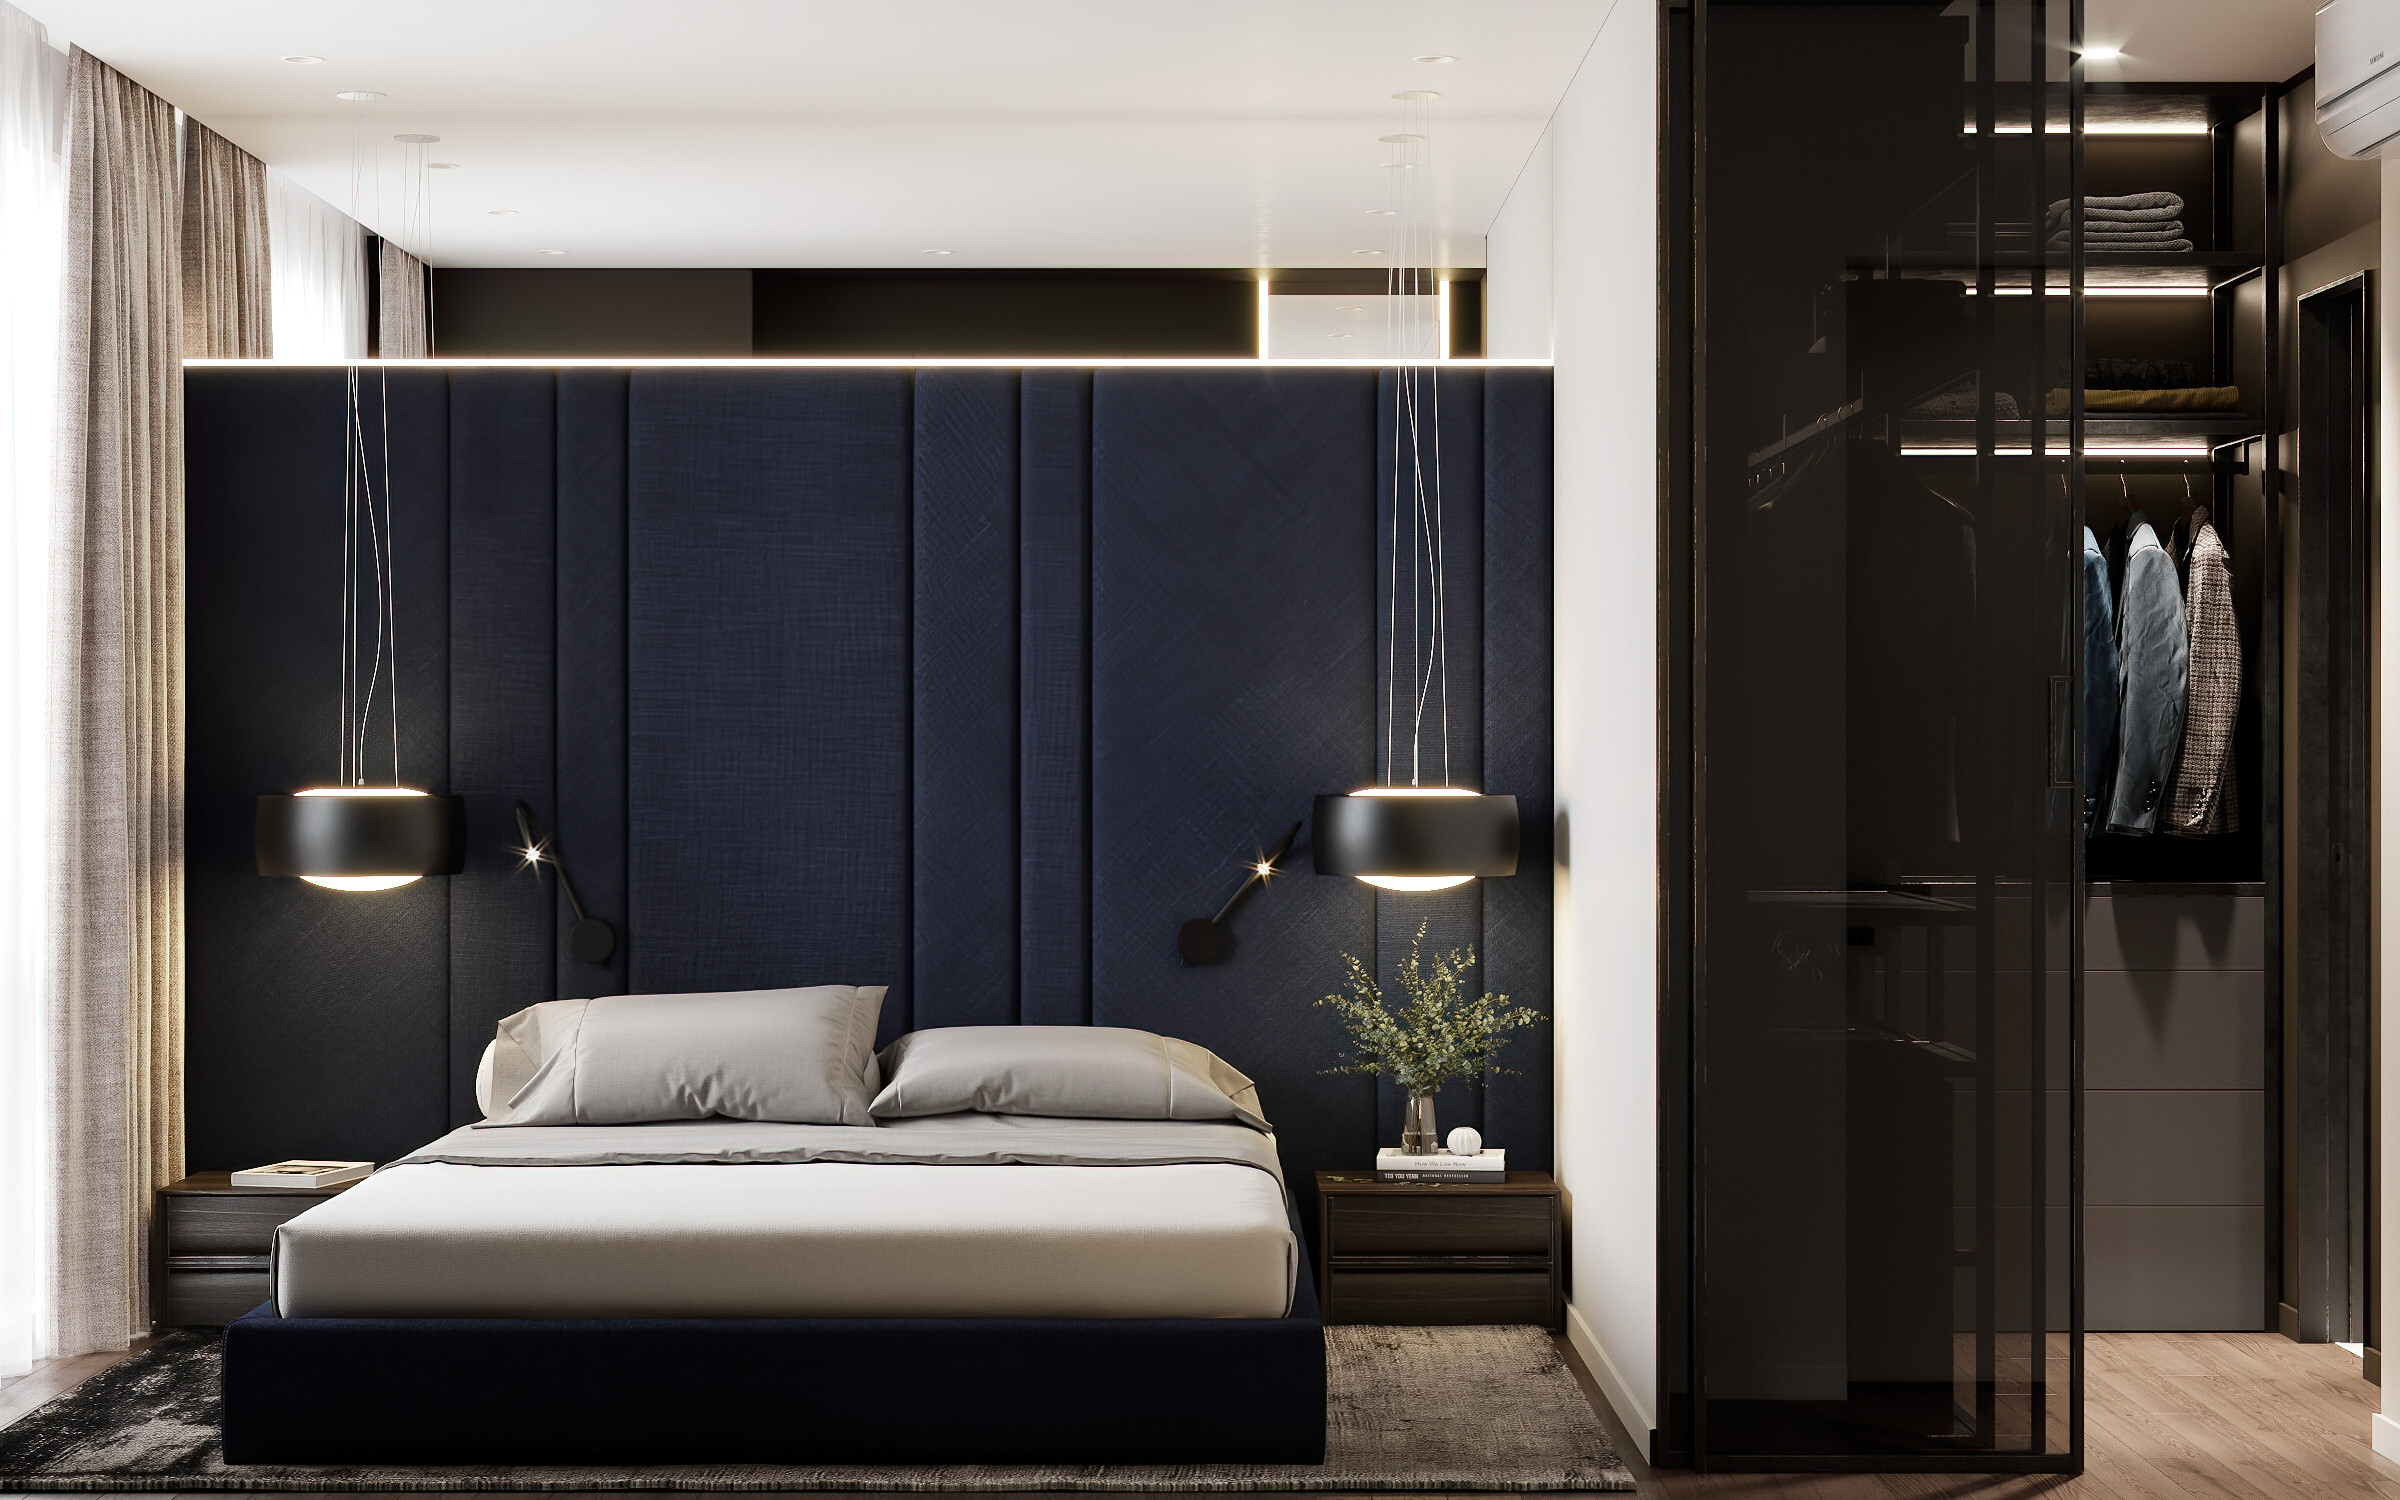 Интерьер спальни с рейками с подсветкой, бра над кроватью, подсветкой настенной, подсветкой светодиодной и светильниками над кроватью в современном стиле